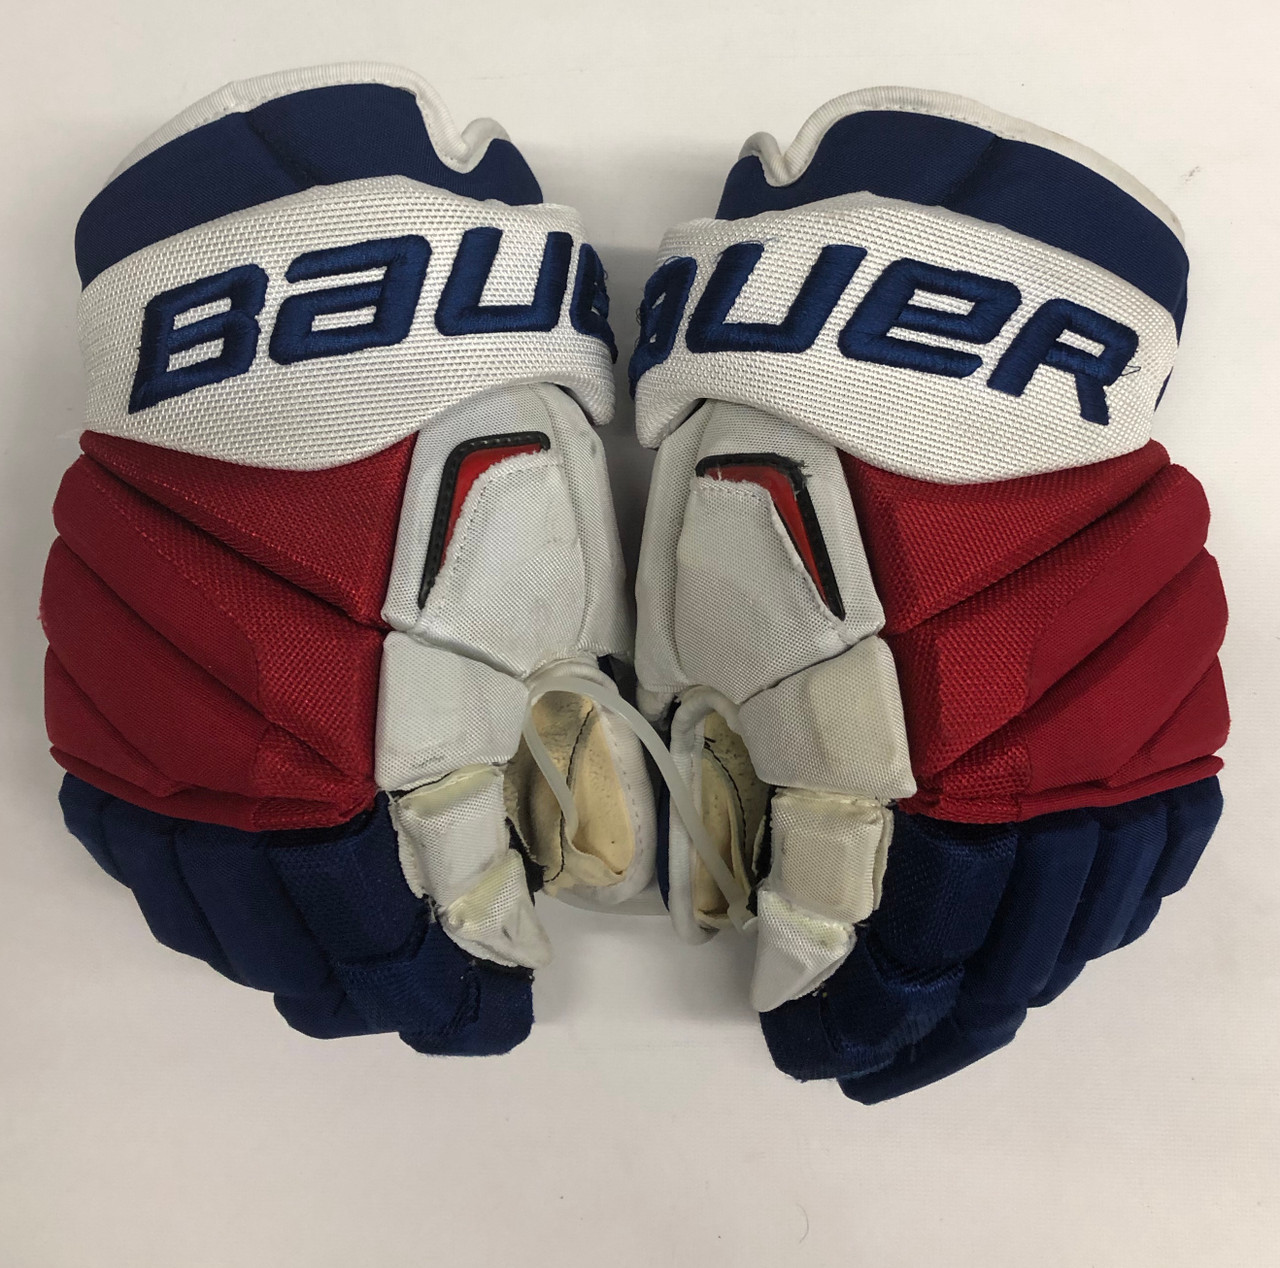 Bauer Vapor APX2 Pro Stock Custom Hockey Gloves 14" NY Rangers used FAST  NHL (4) - DK's Hockey Shop